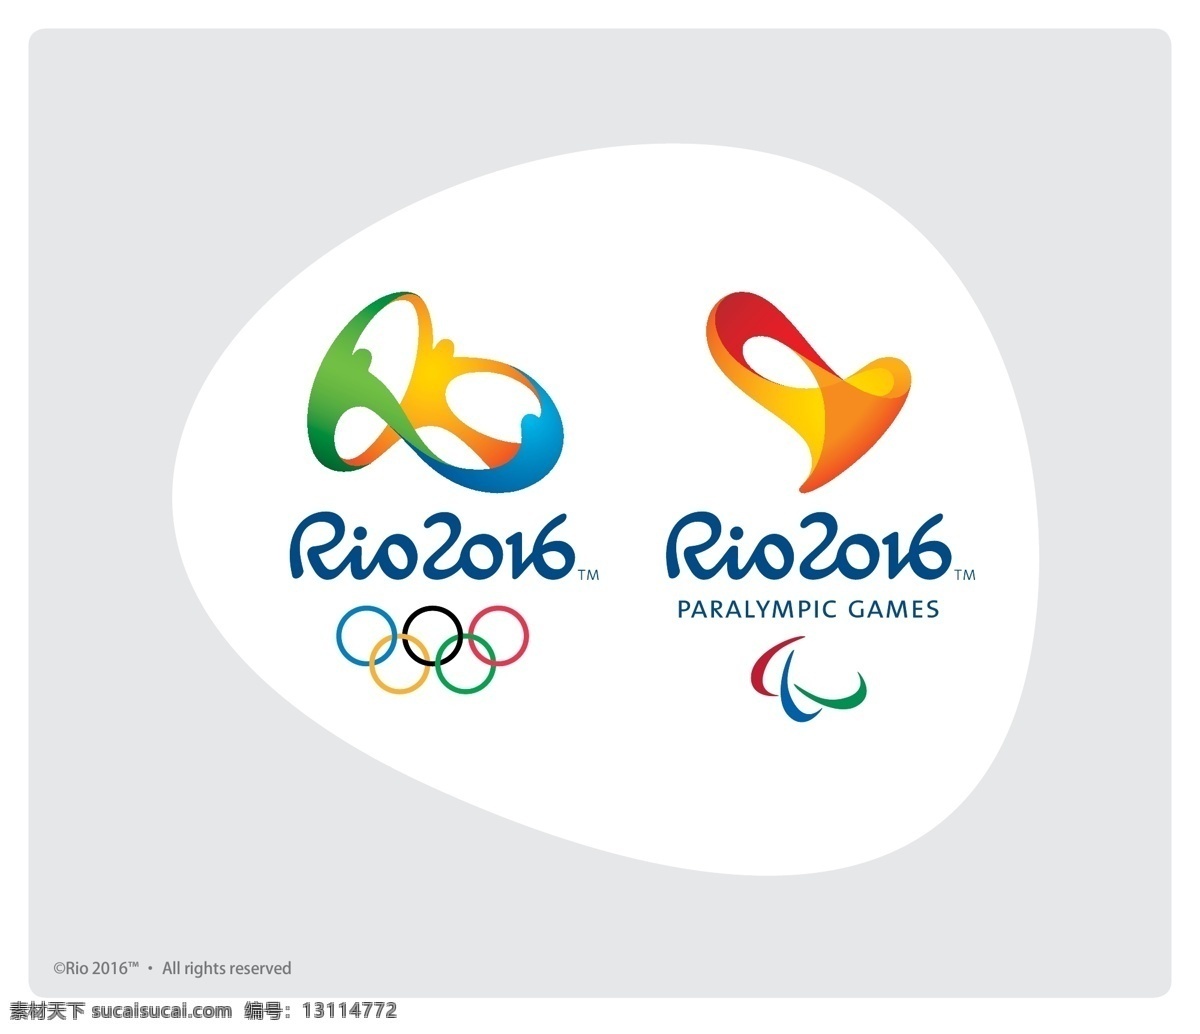 2016 残奥会 会徽 矢量 ai矢量素材 奥运会 rio emblem 里约热内卢 矢量图 其他矢量图